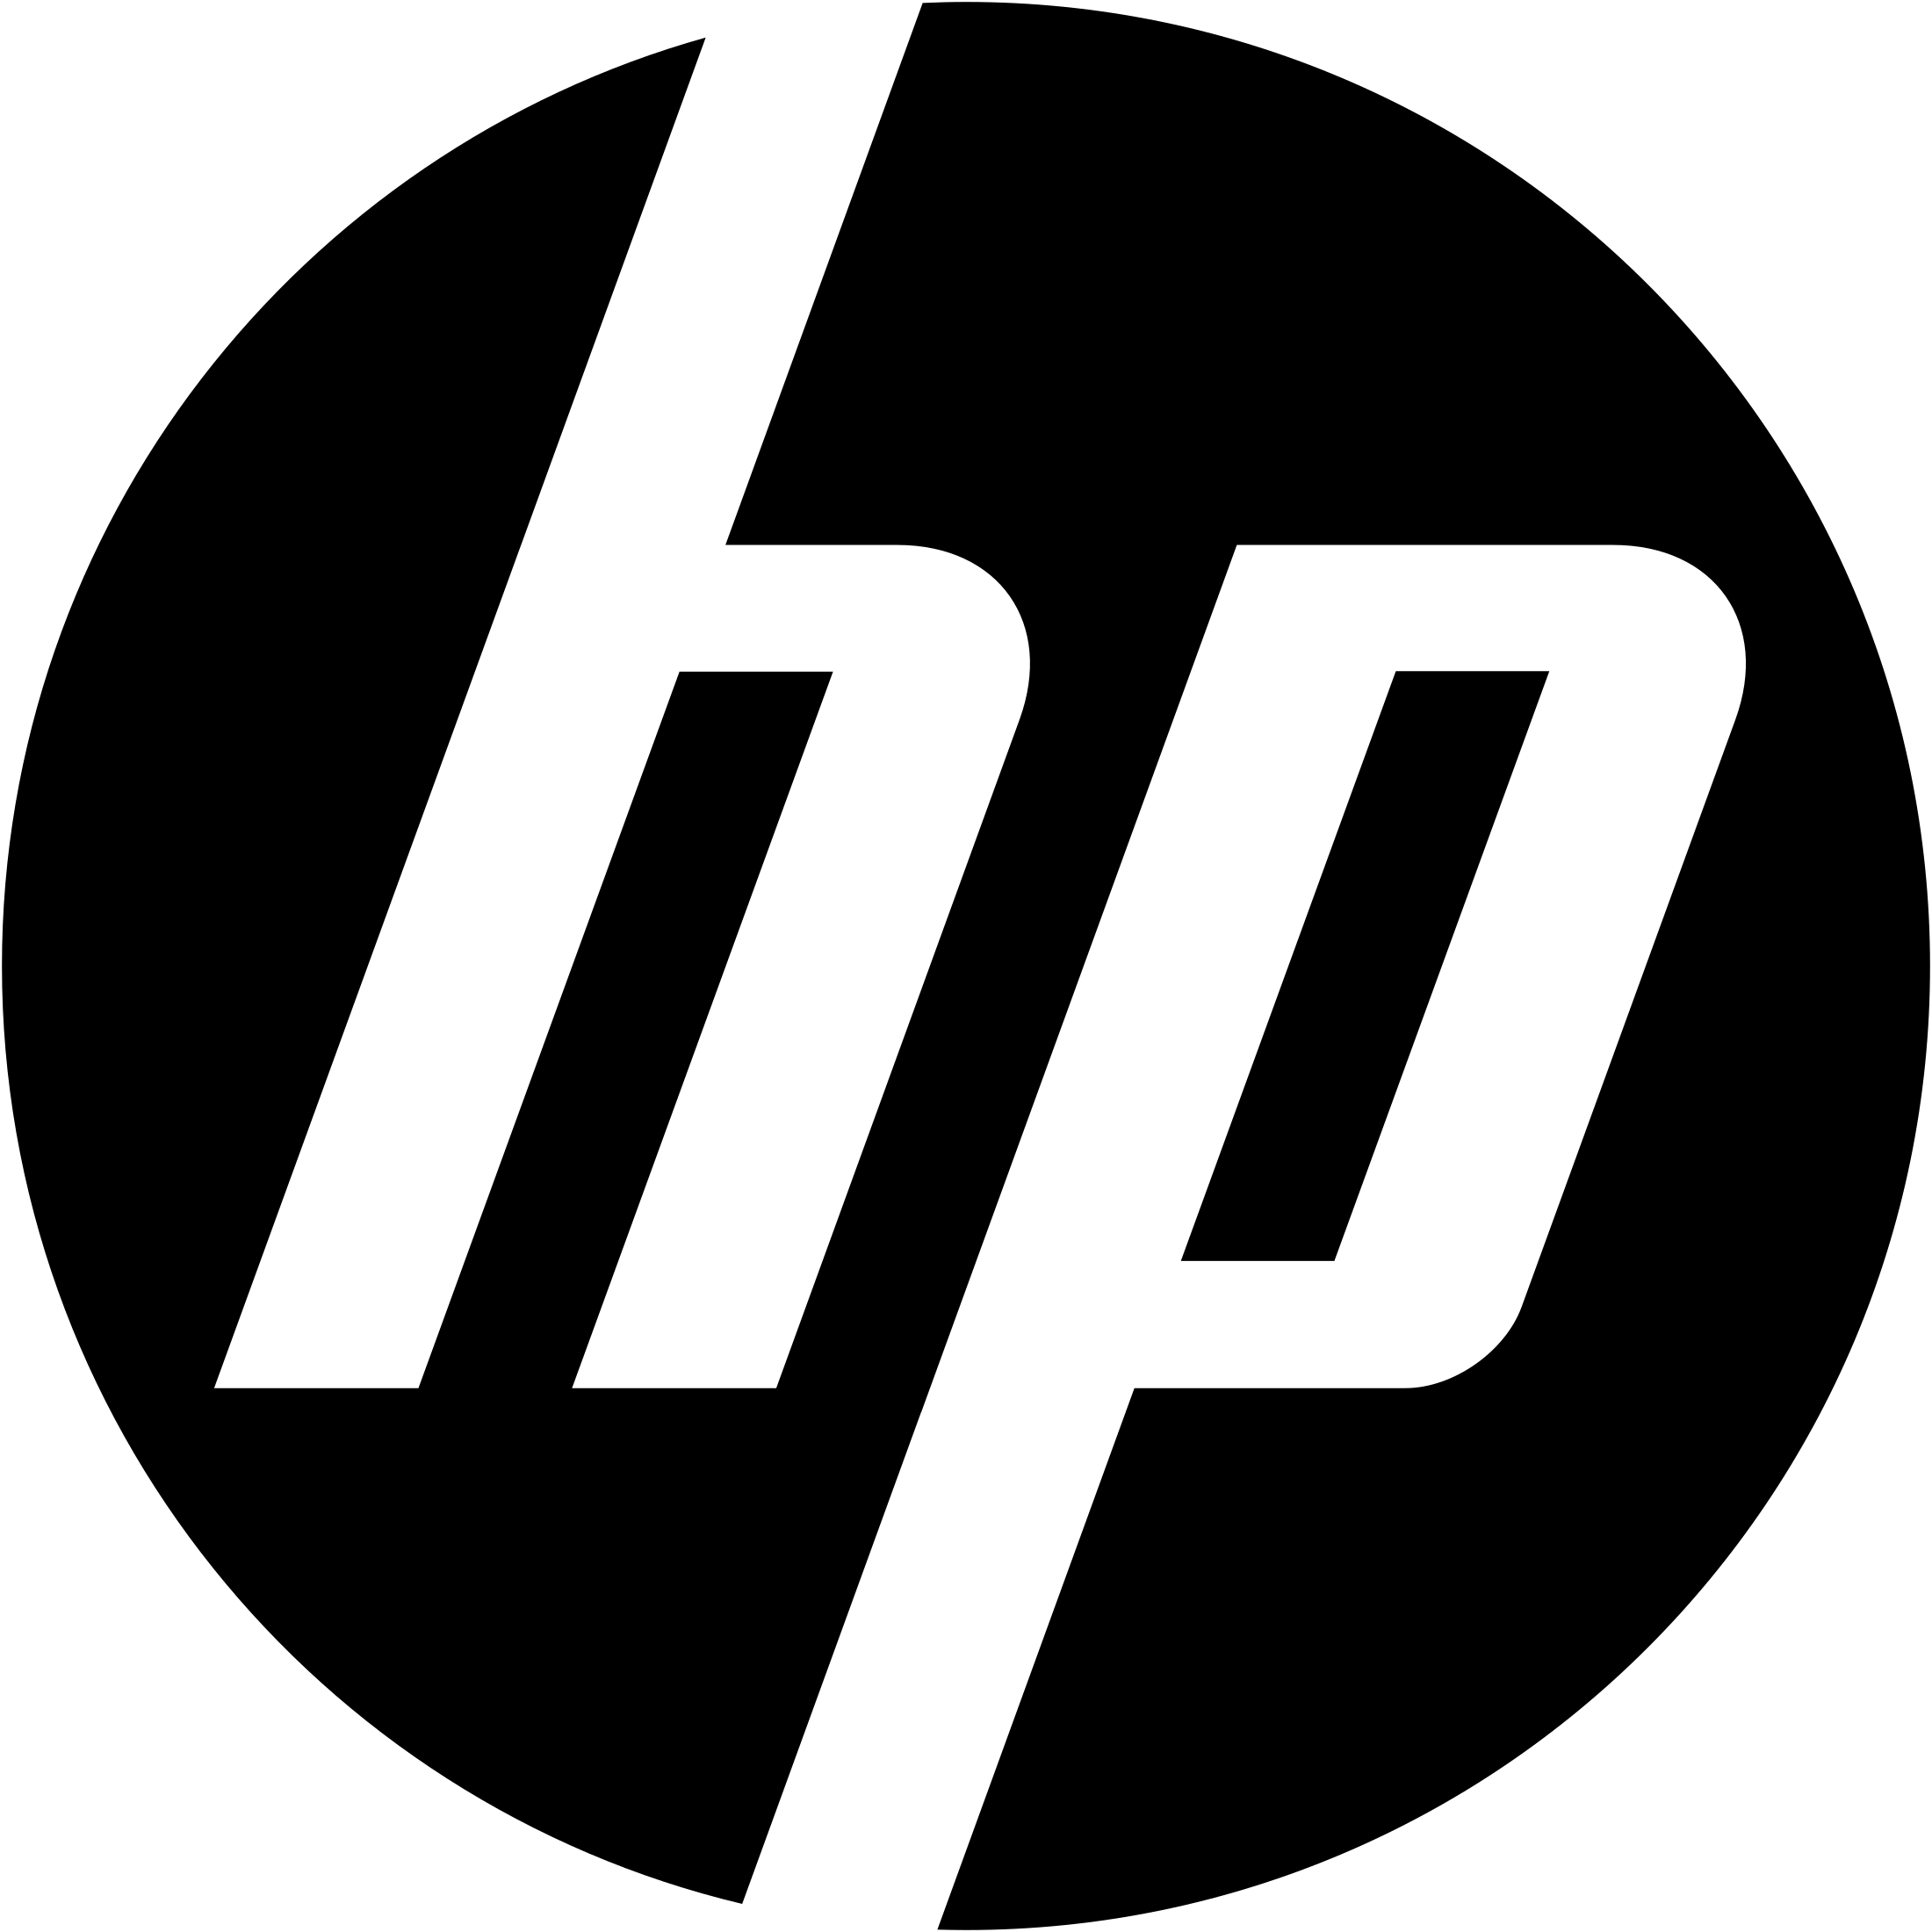 hewlett-packard logo